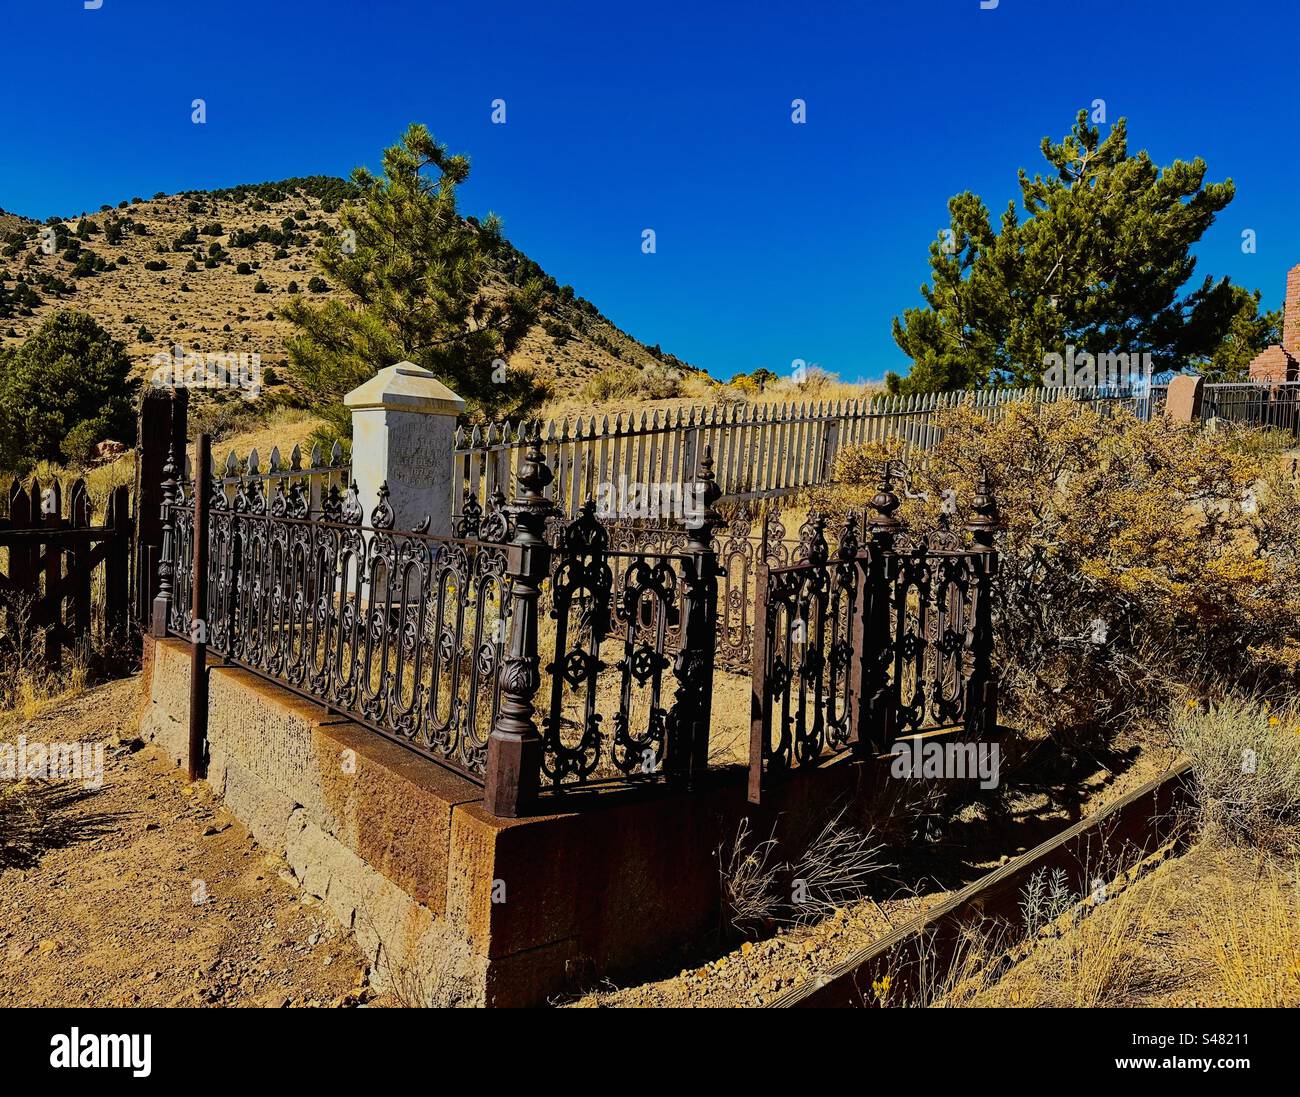 Silver Terrace Cemeteries (Virginia City, Nevada) tomba del Commissario della contea Storey Lawrence H. Torp, ucciso in un incidente in buggy mentre tornava a casa dalla chiesa nel 1878. Foto Stock